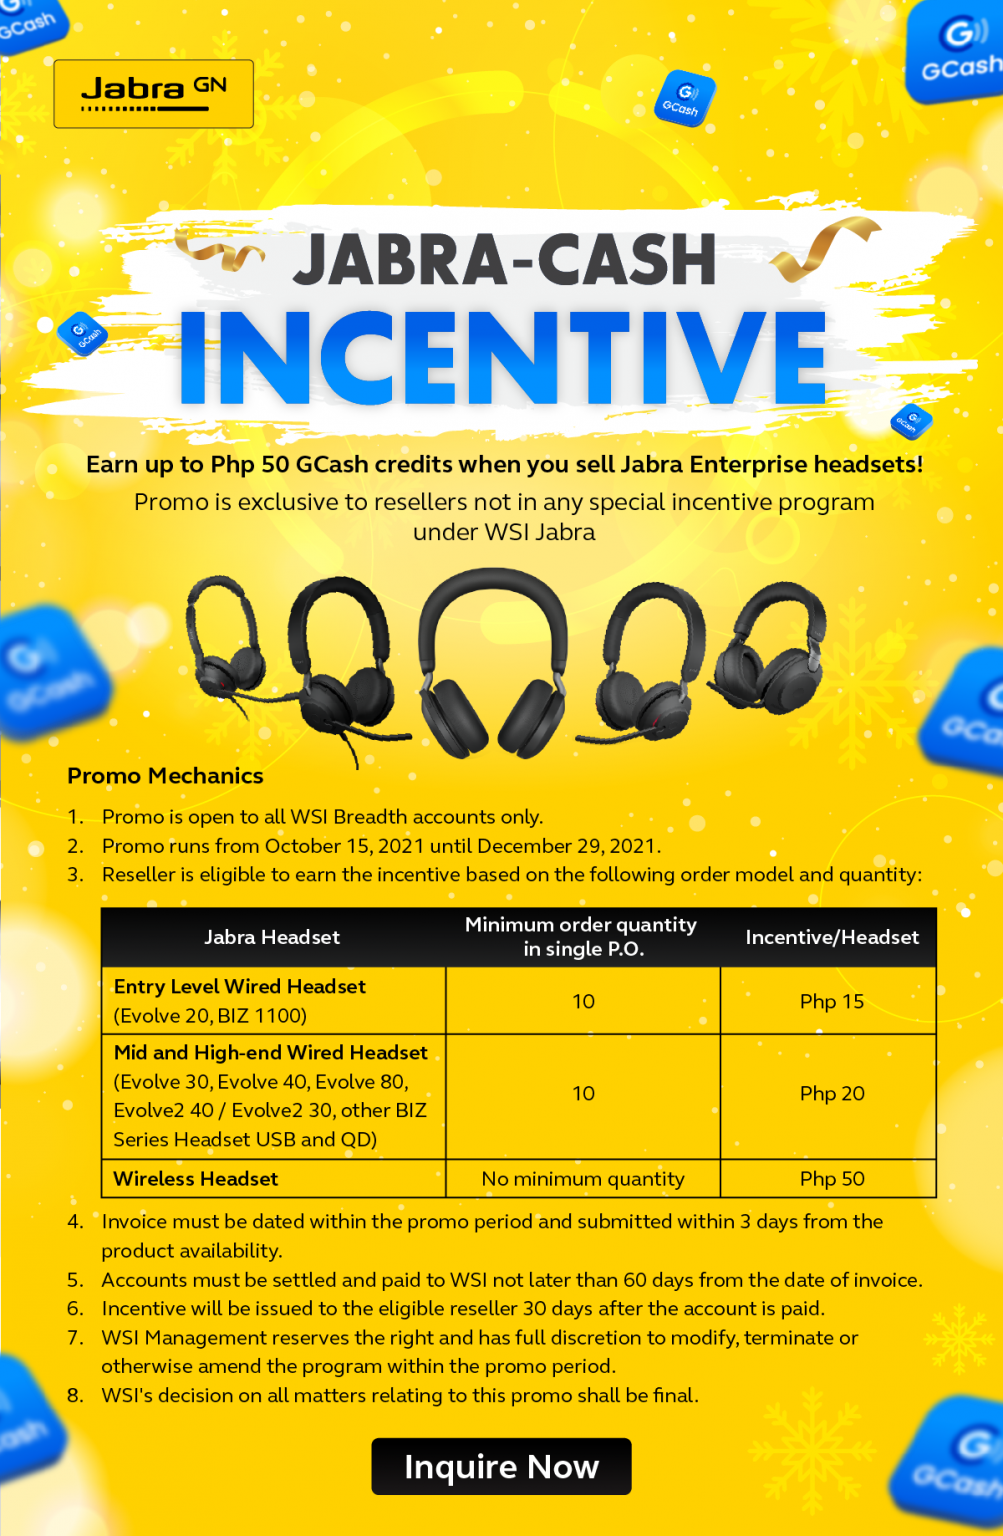 jabra-enterprise-cash-incentive-program-wordtext-systems-inc